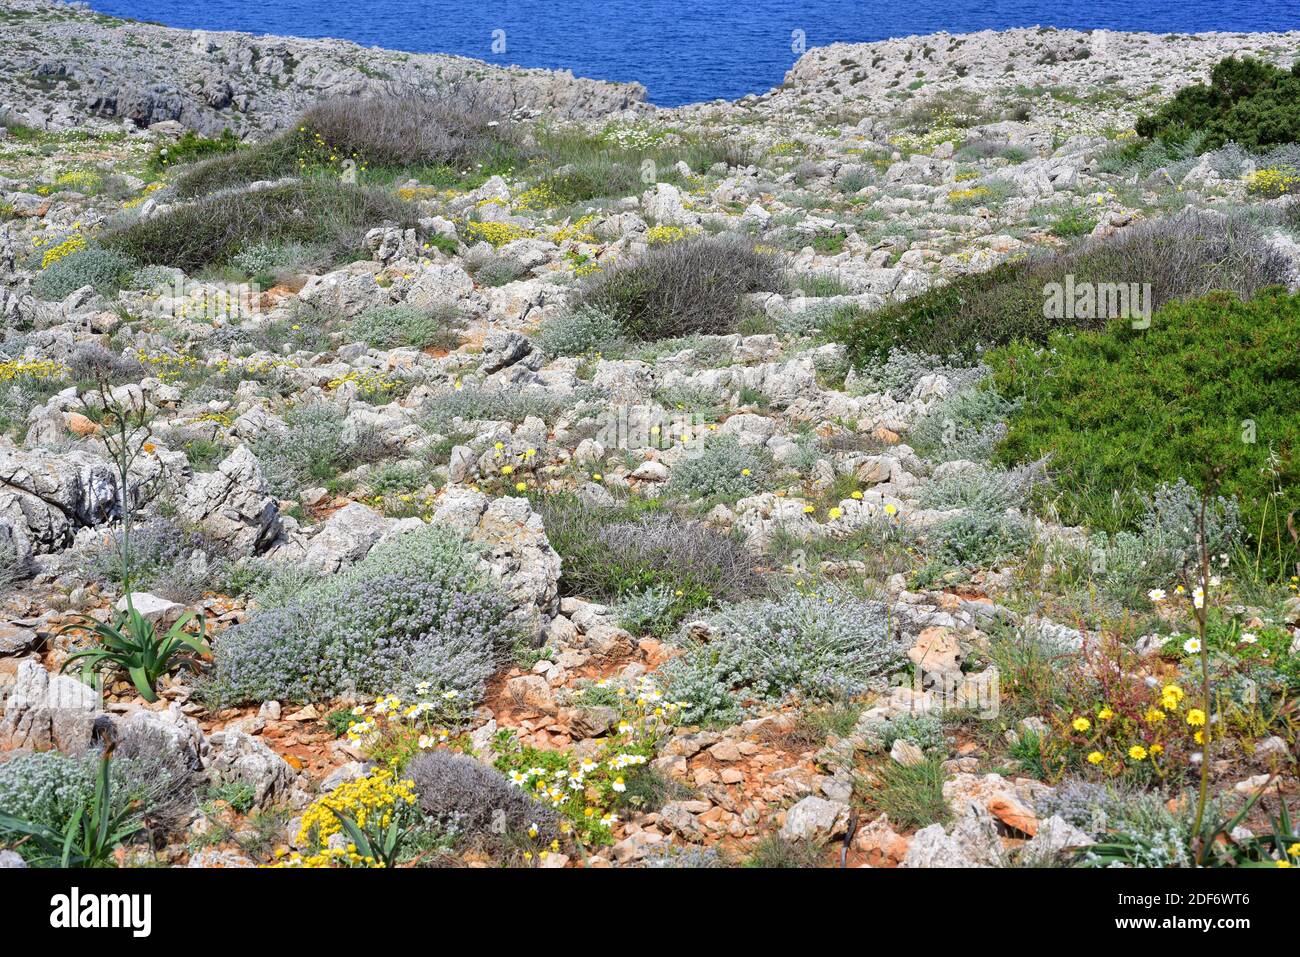 Tomillo blanco o tomillo macho (Teucrium capitatum) es un arbusto perenne nativo de la cuenca mediterránea y Asia occidental. Esta foto fue tomada Foto de stock